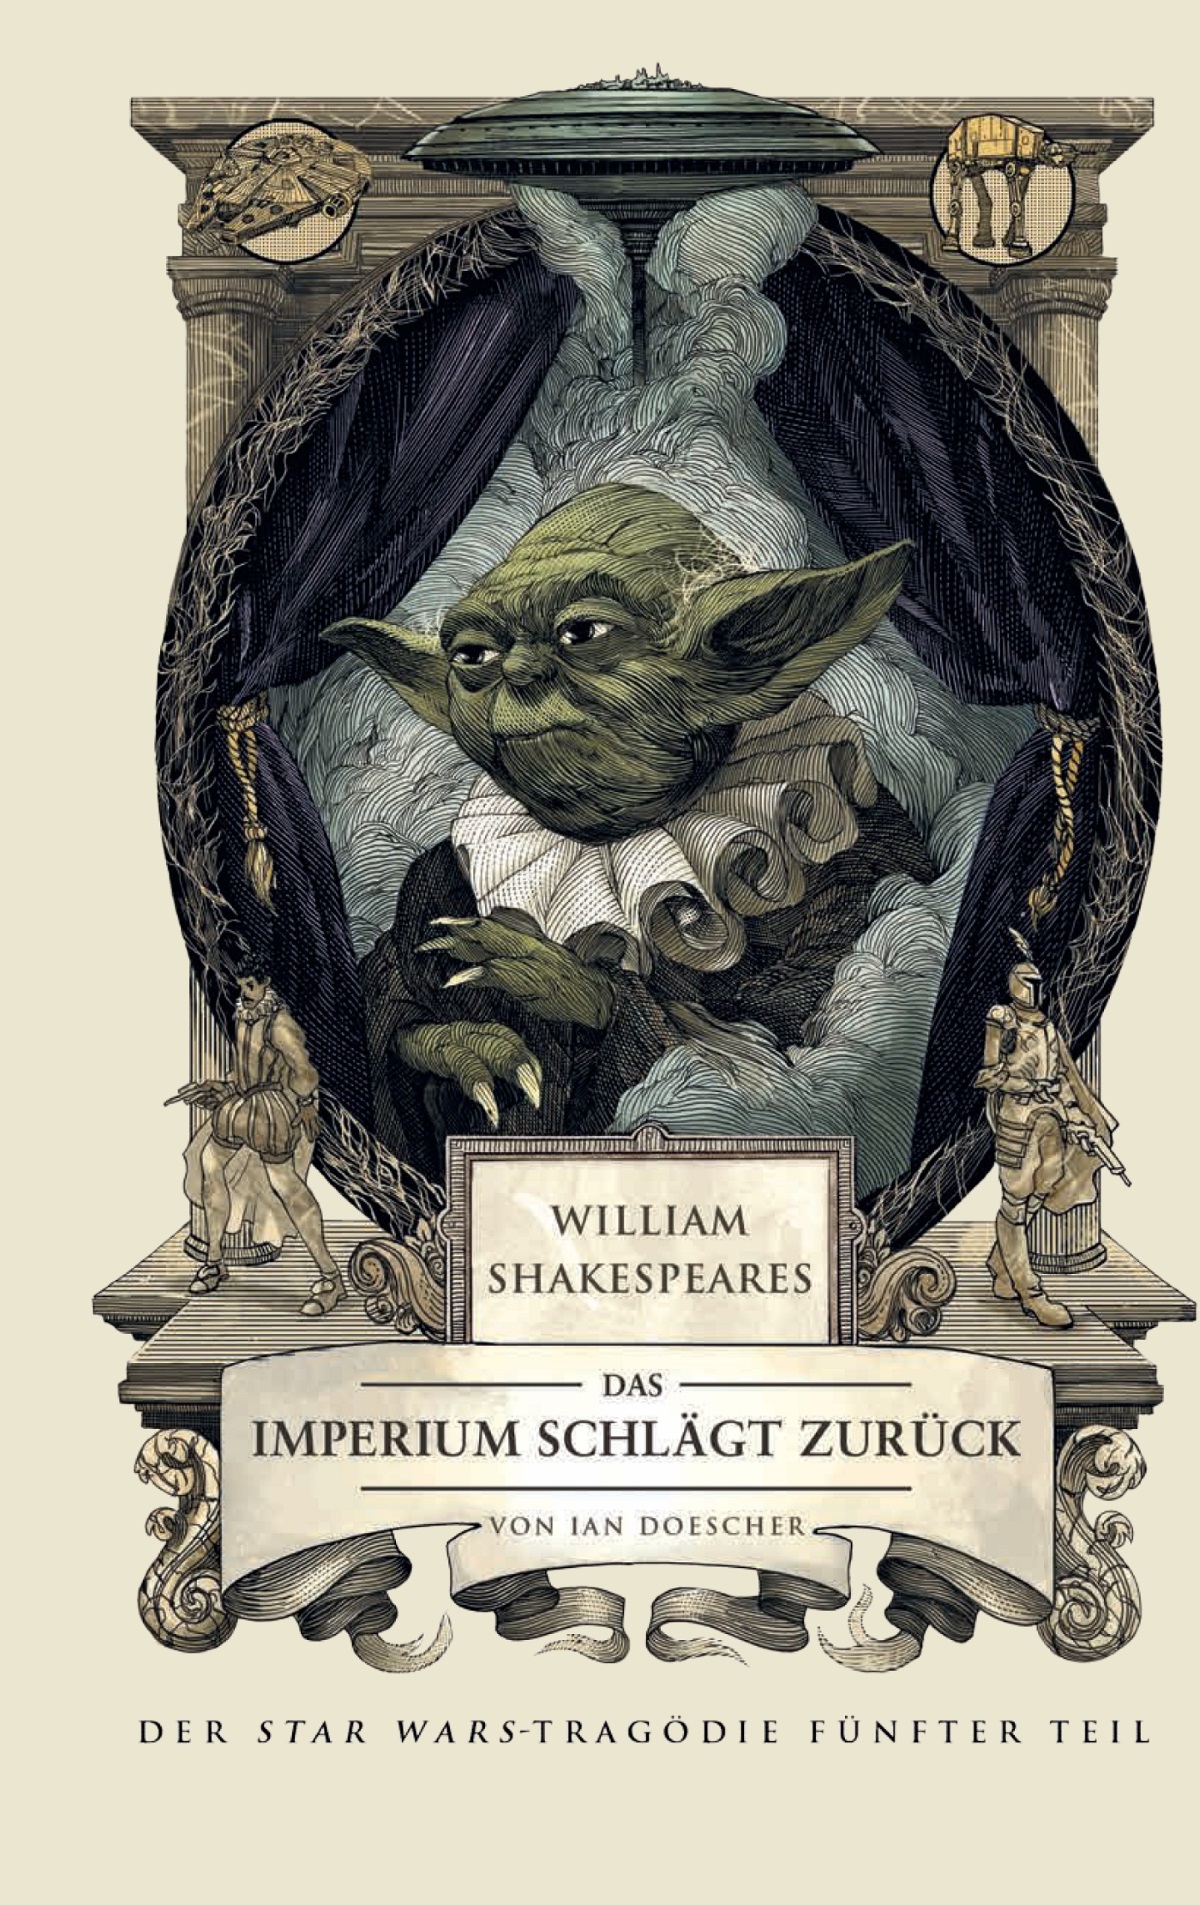 William Shakespeares Star Wars: Das Imperium schlägt zurück (21.09.2015)